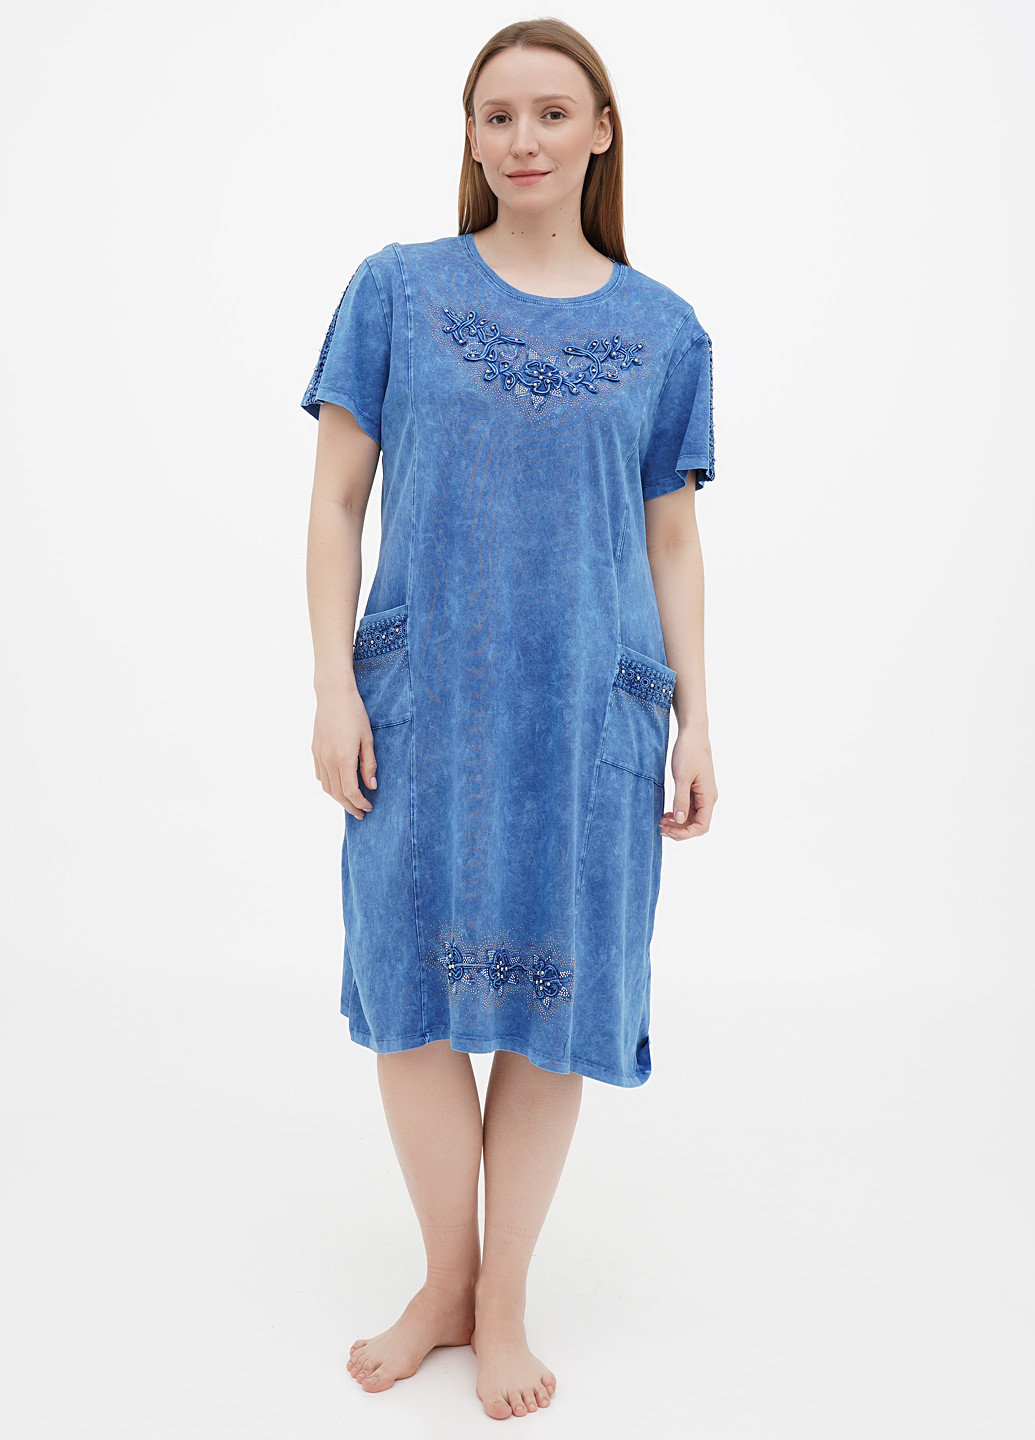 Светло-синее домашнее платье ROMEO LIFE варенка